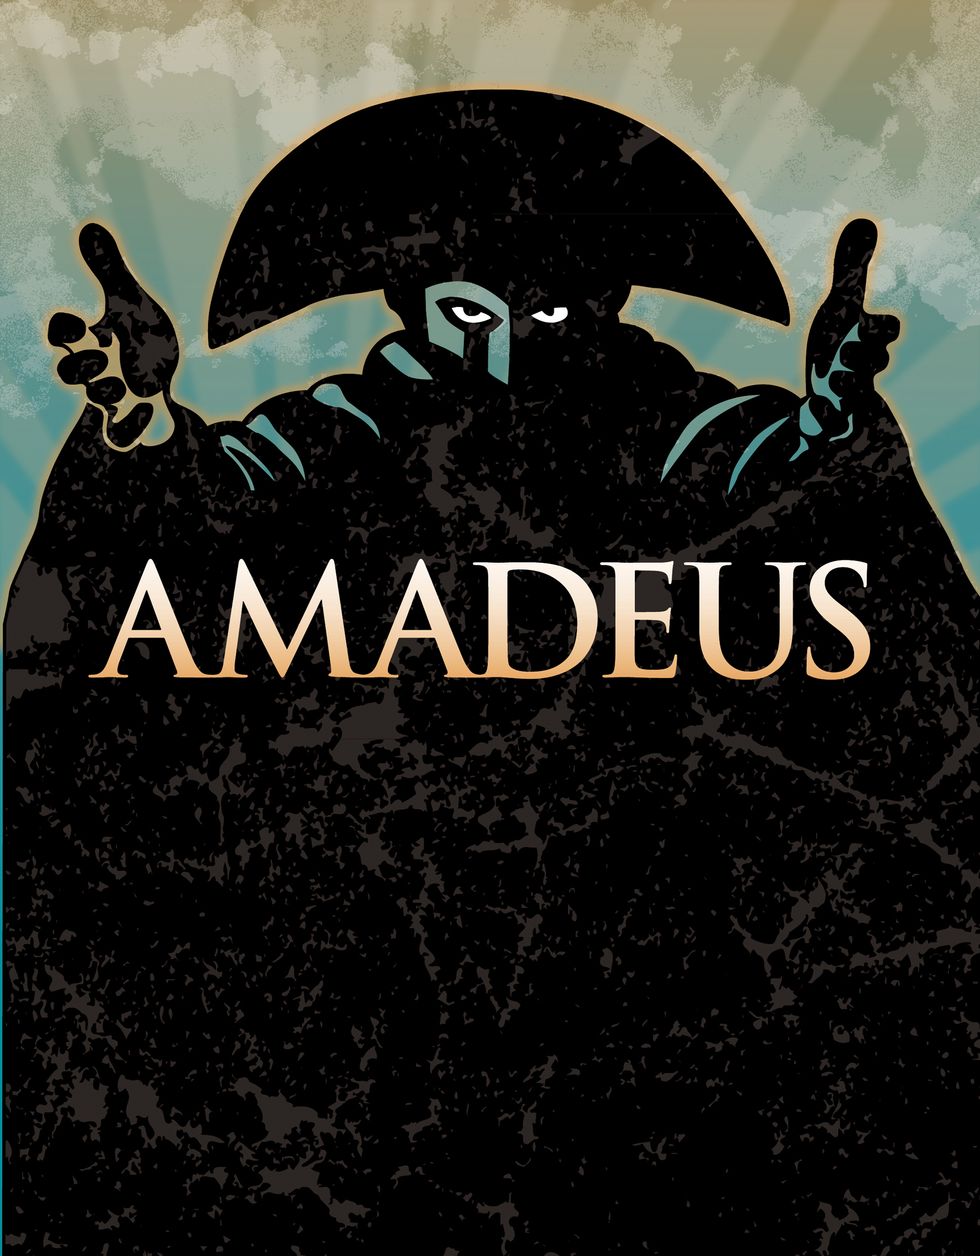 Weekly Film Ramble: "Amadeus"